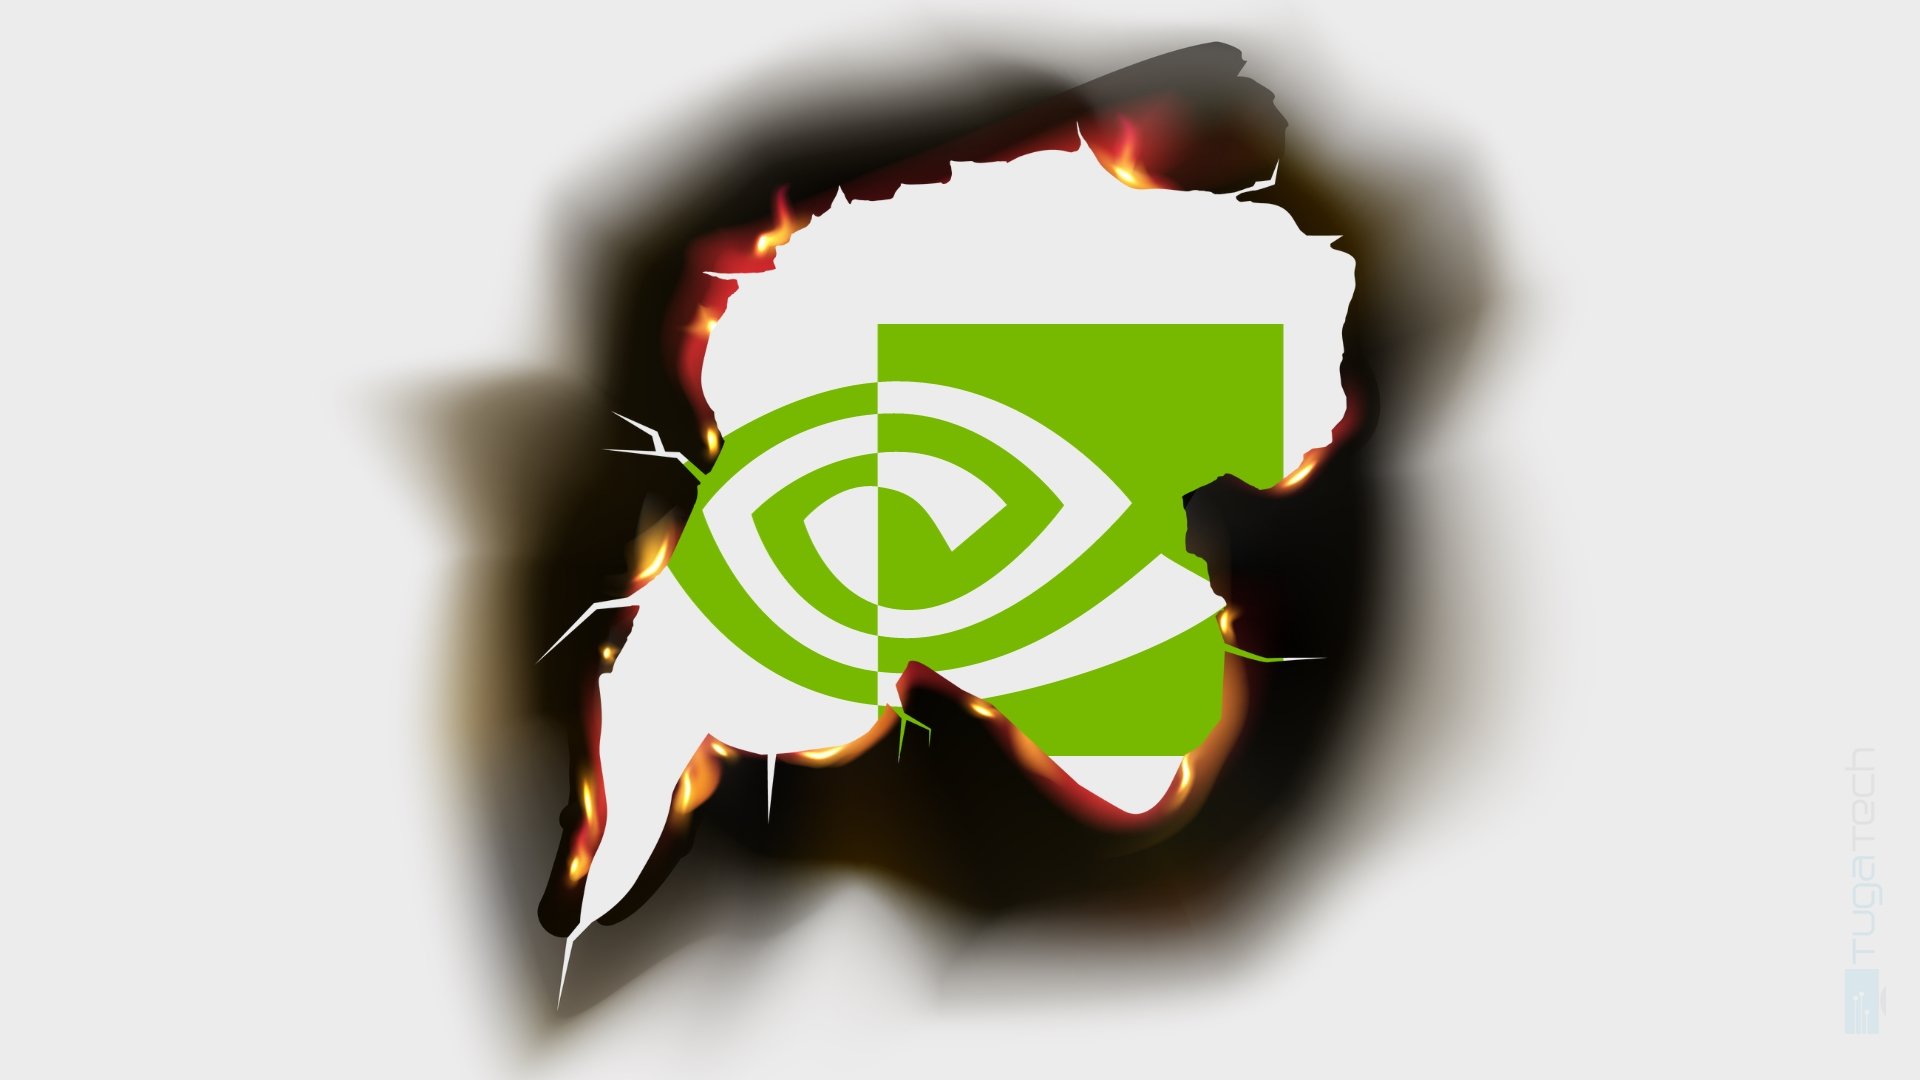 Logo da Nvidia queimado